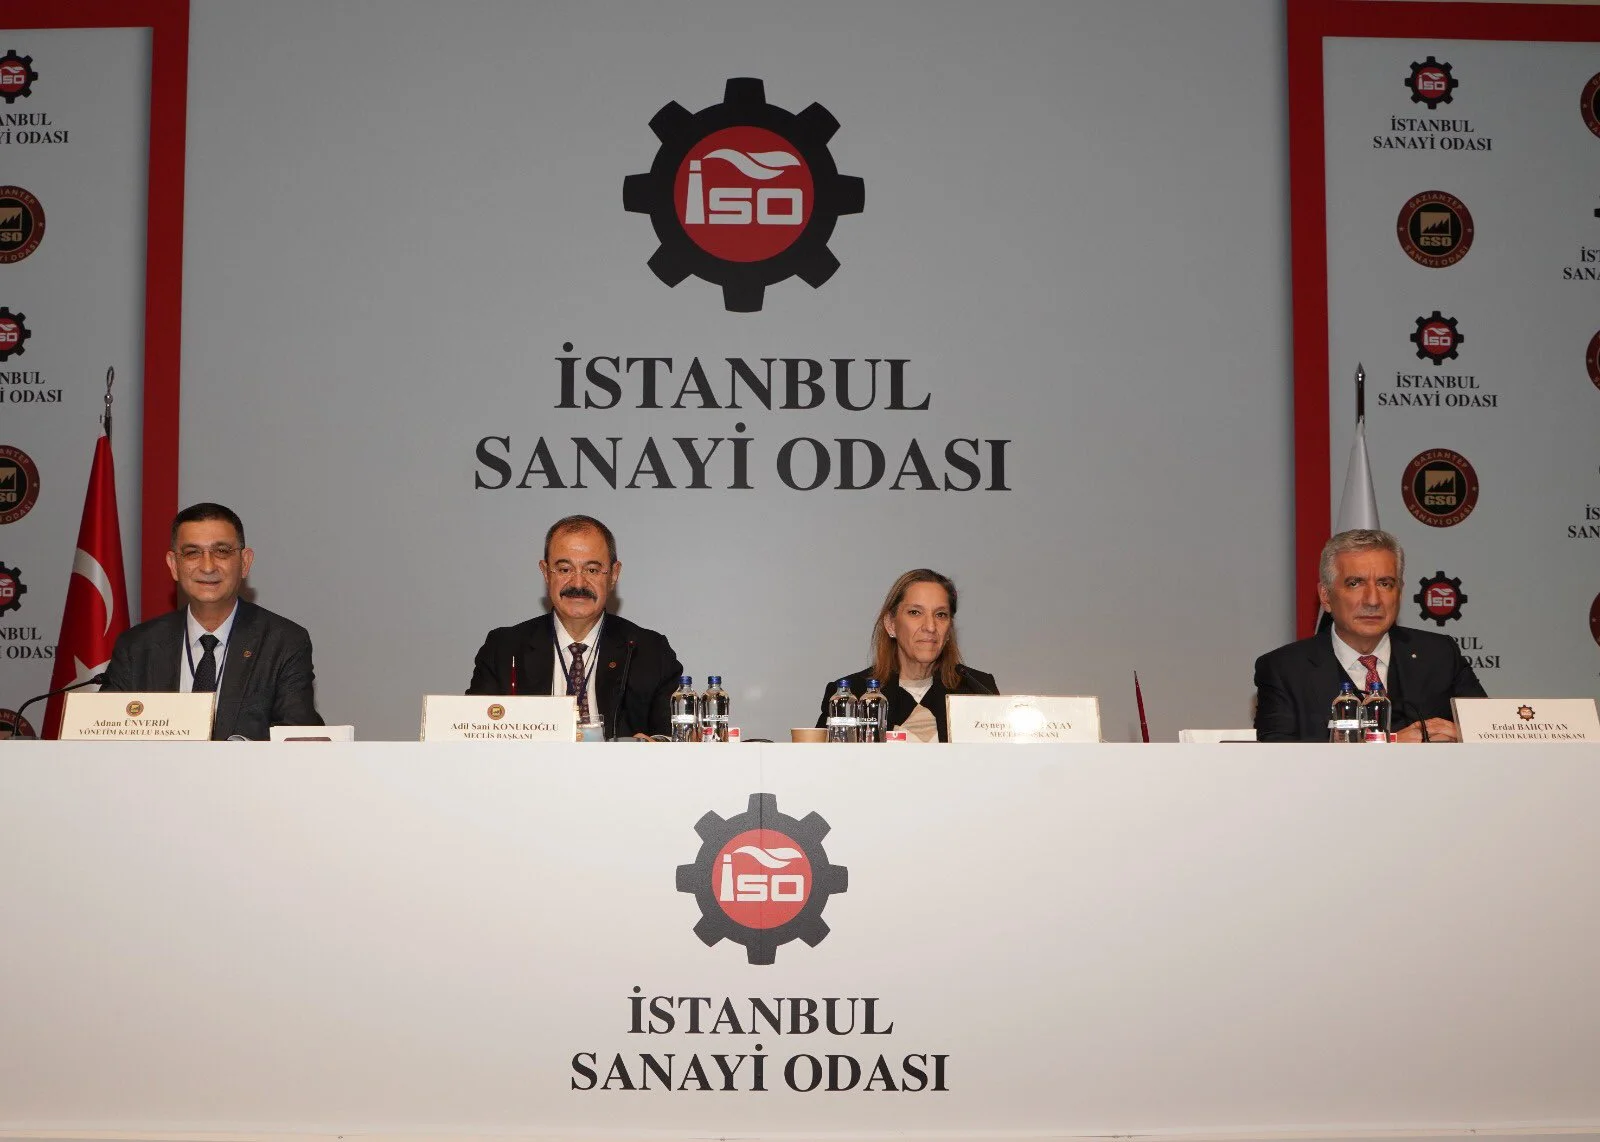 İstanbul Sanayi Odası Dijiname ile Dijital Dönüşüme Başladı